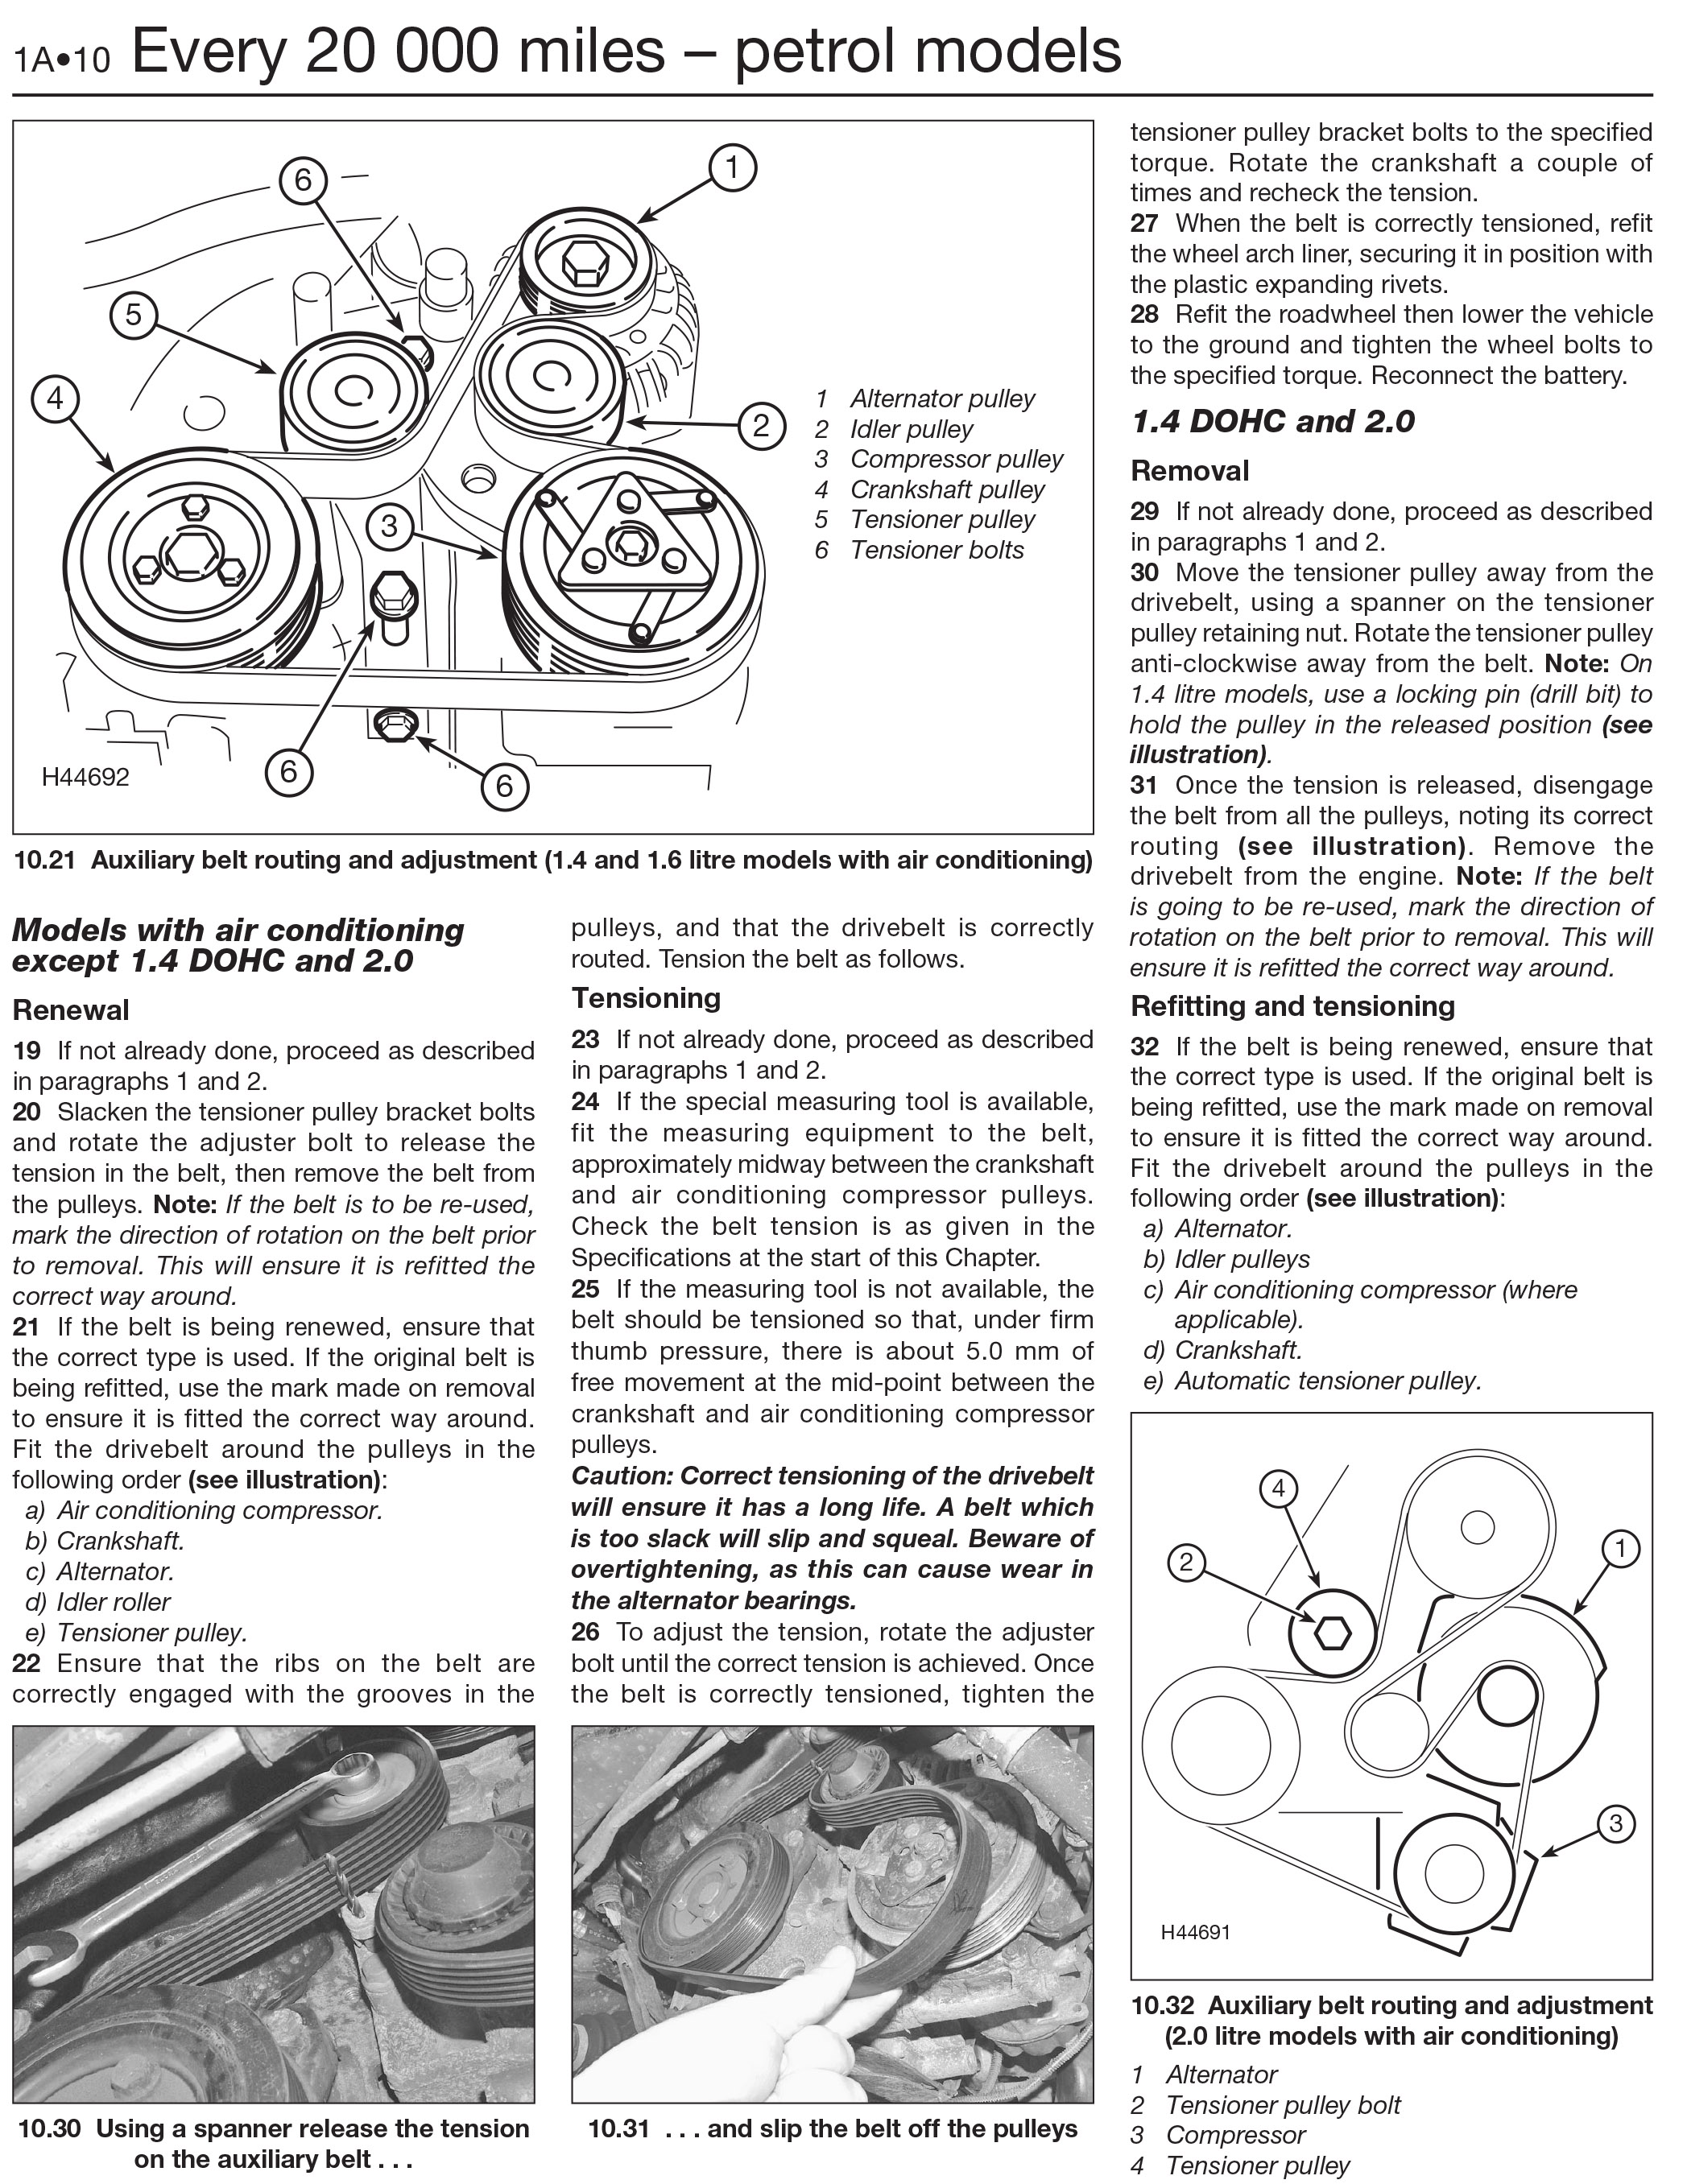 Peugeot 206 haynes manual download pdf